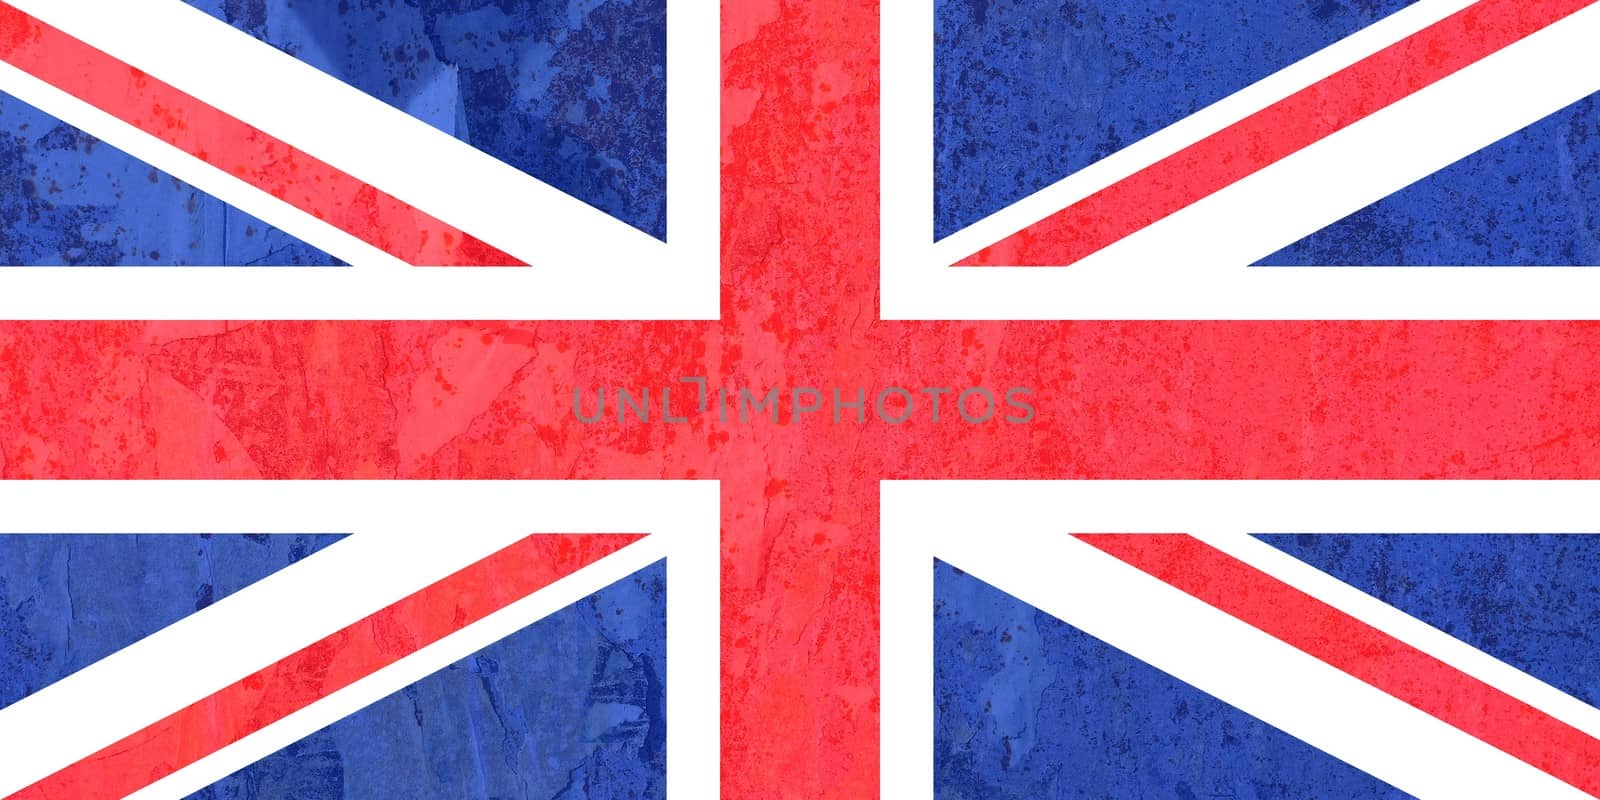 the British national flag of United Kingdom, Europe, texturised background